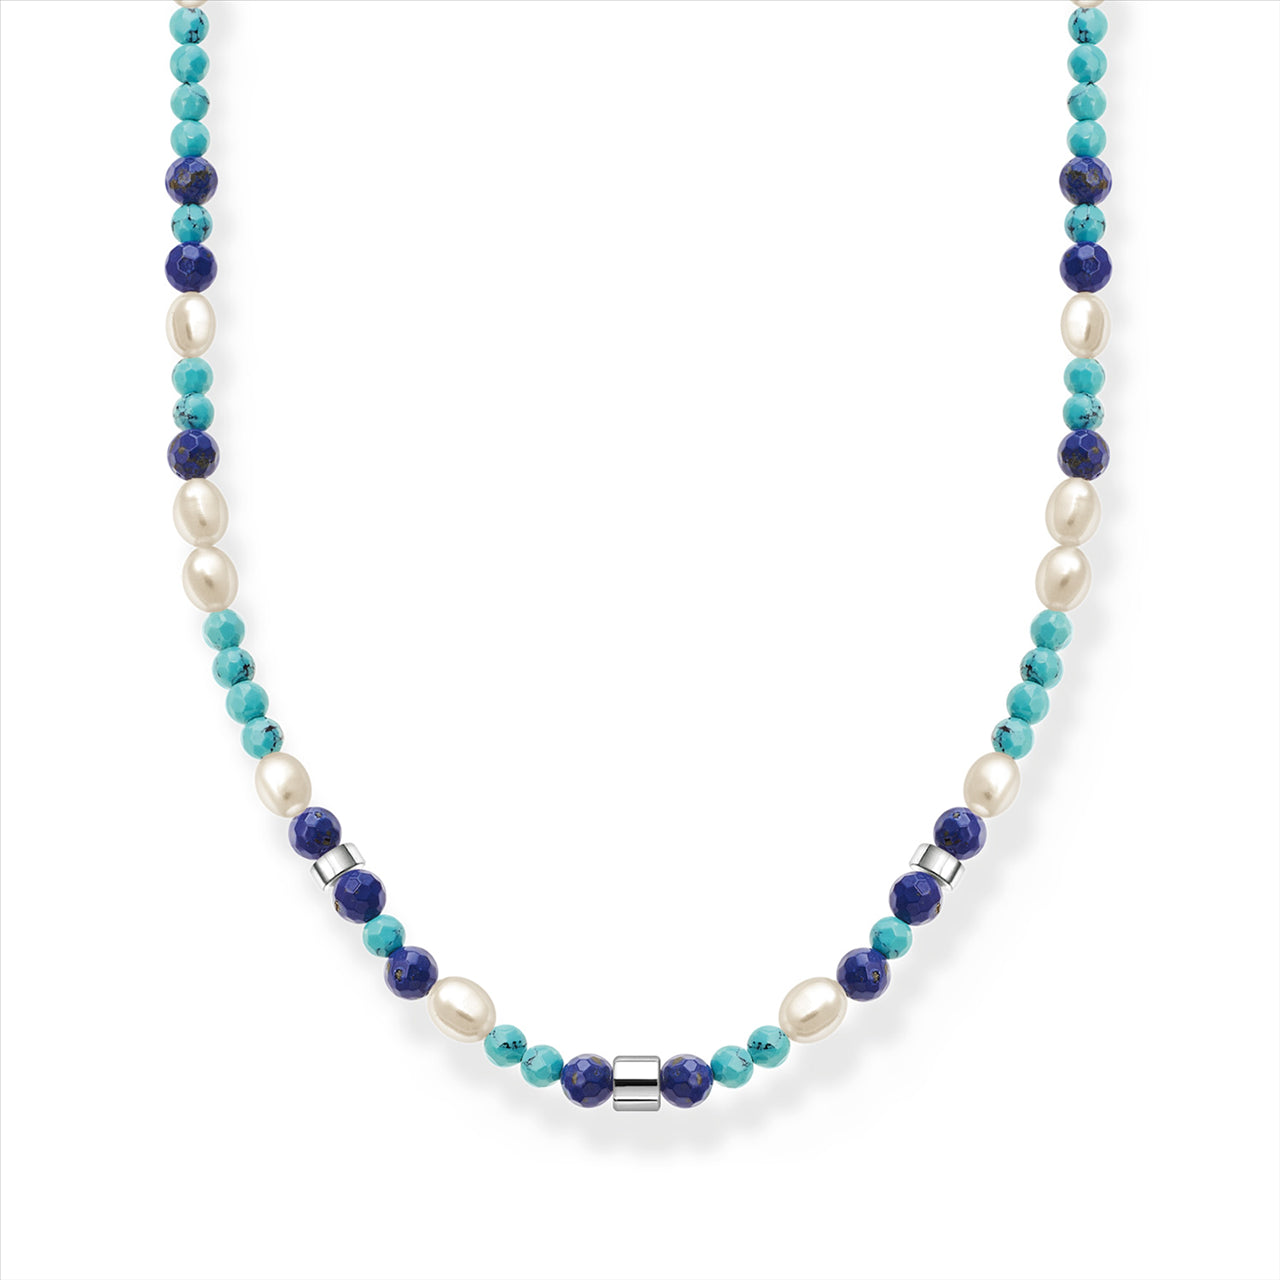 Thomas Sabo Pearl, Turquoise & Lapis Lazuli Necklace.